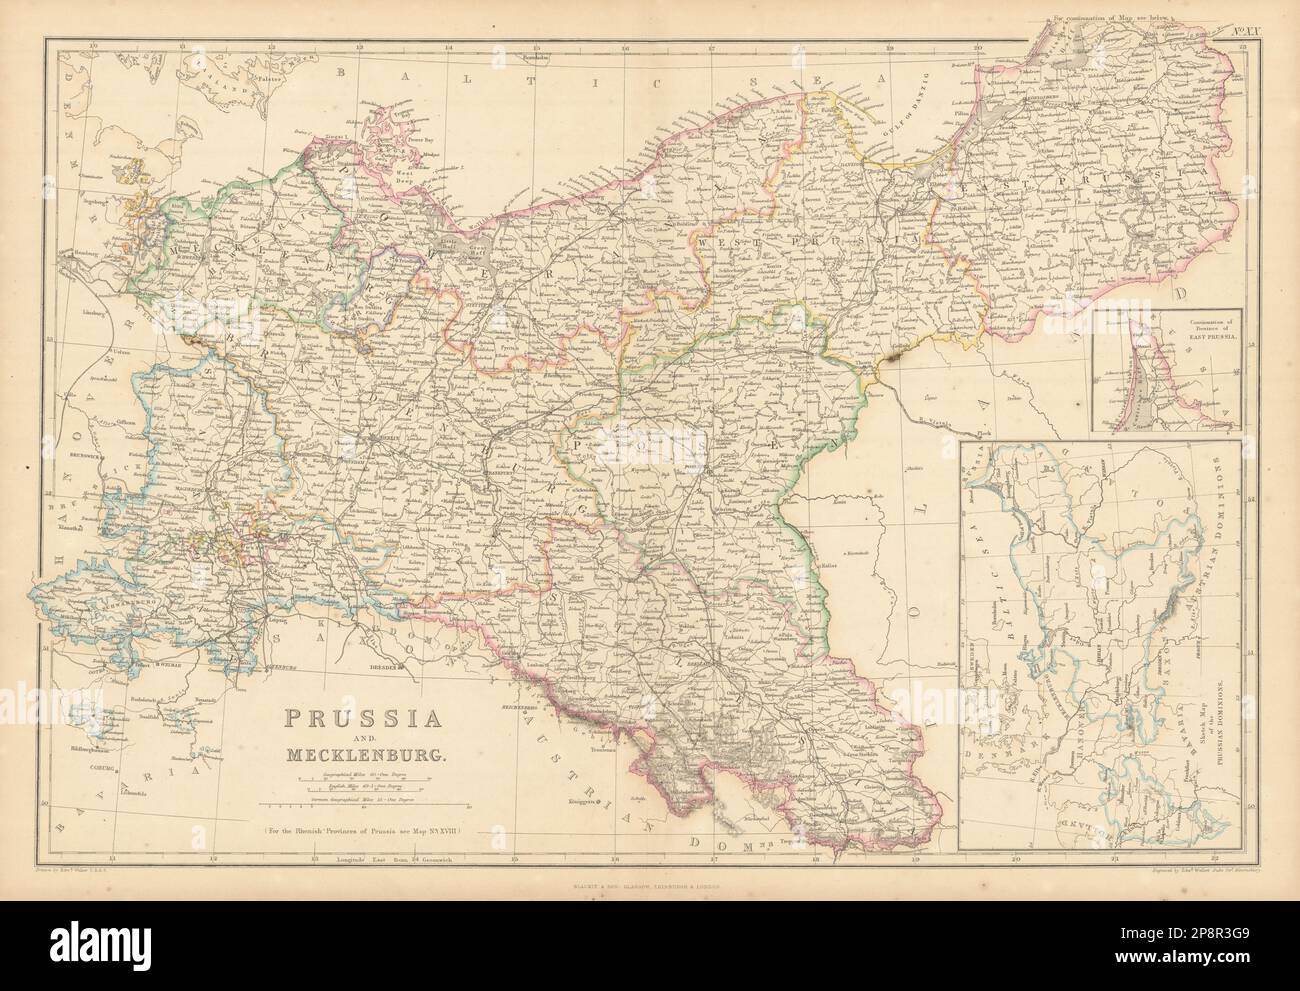 Prusia y Mecklemburgo por Edward Weller. Alemania y Polonia 1859 mapa antiguo Foto de stock